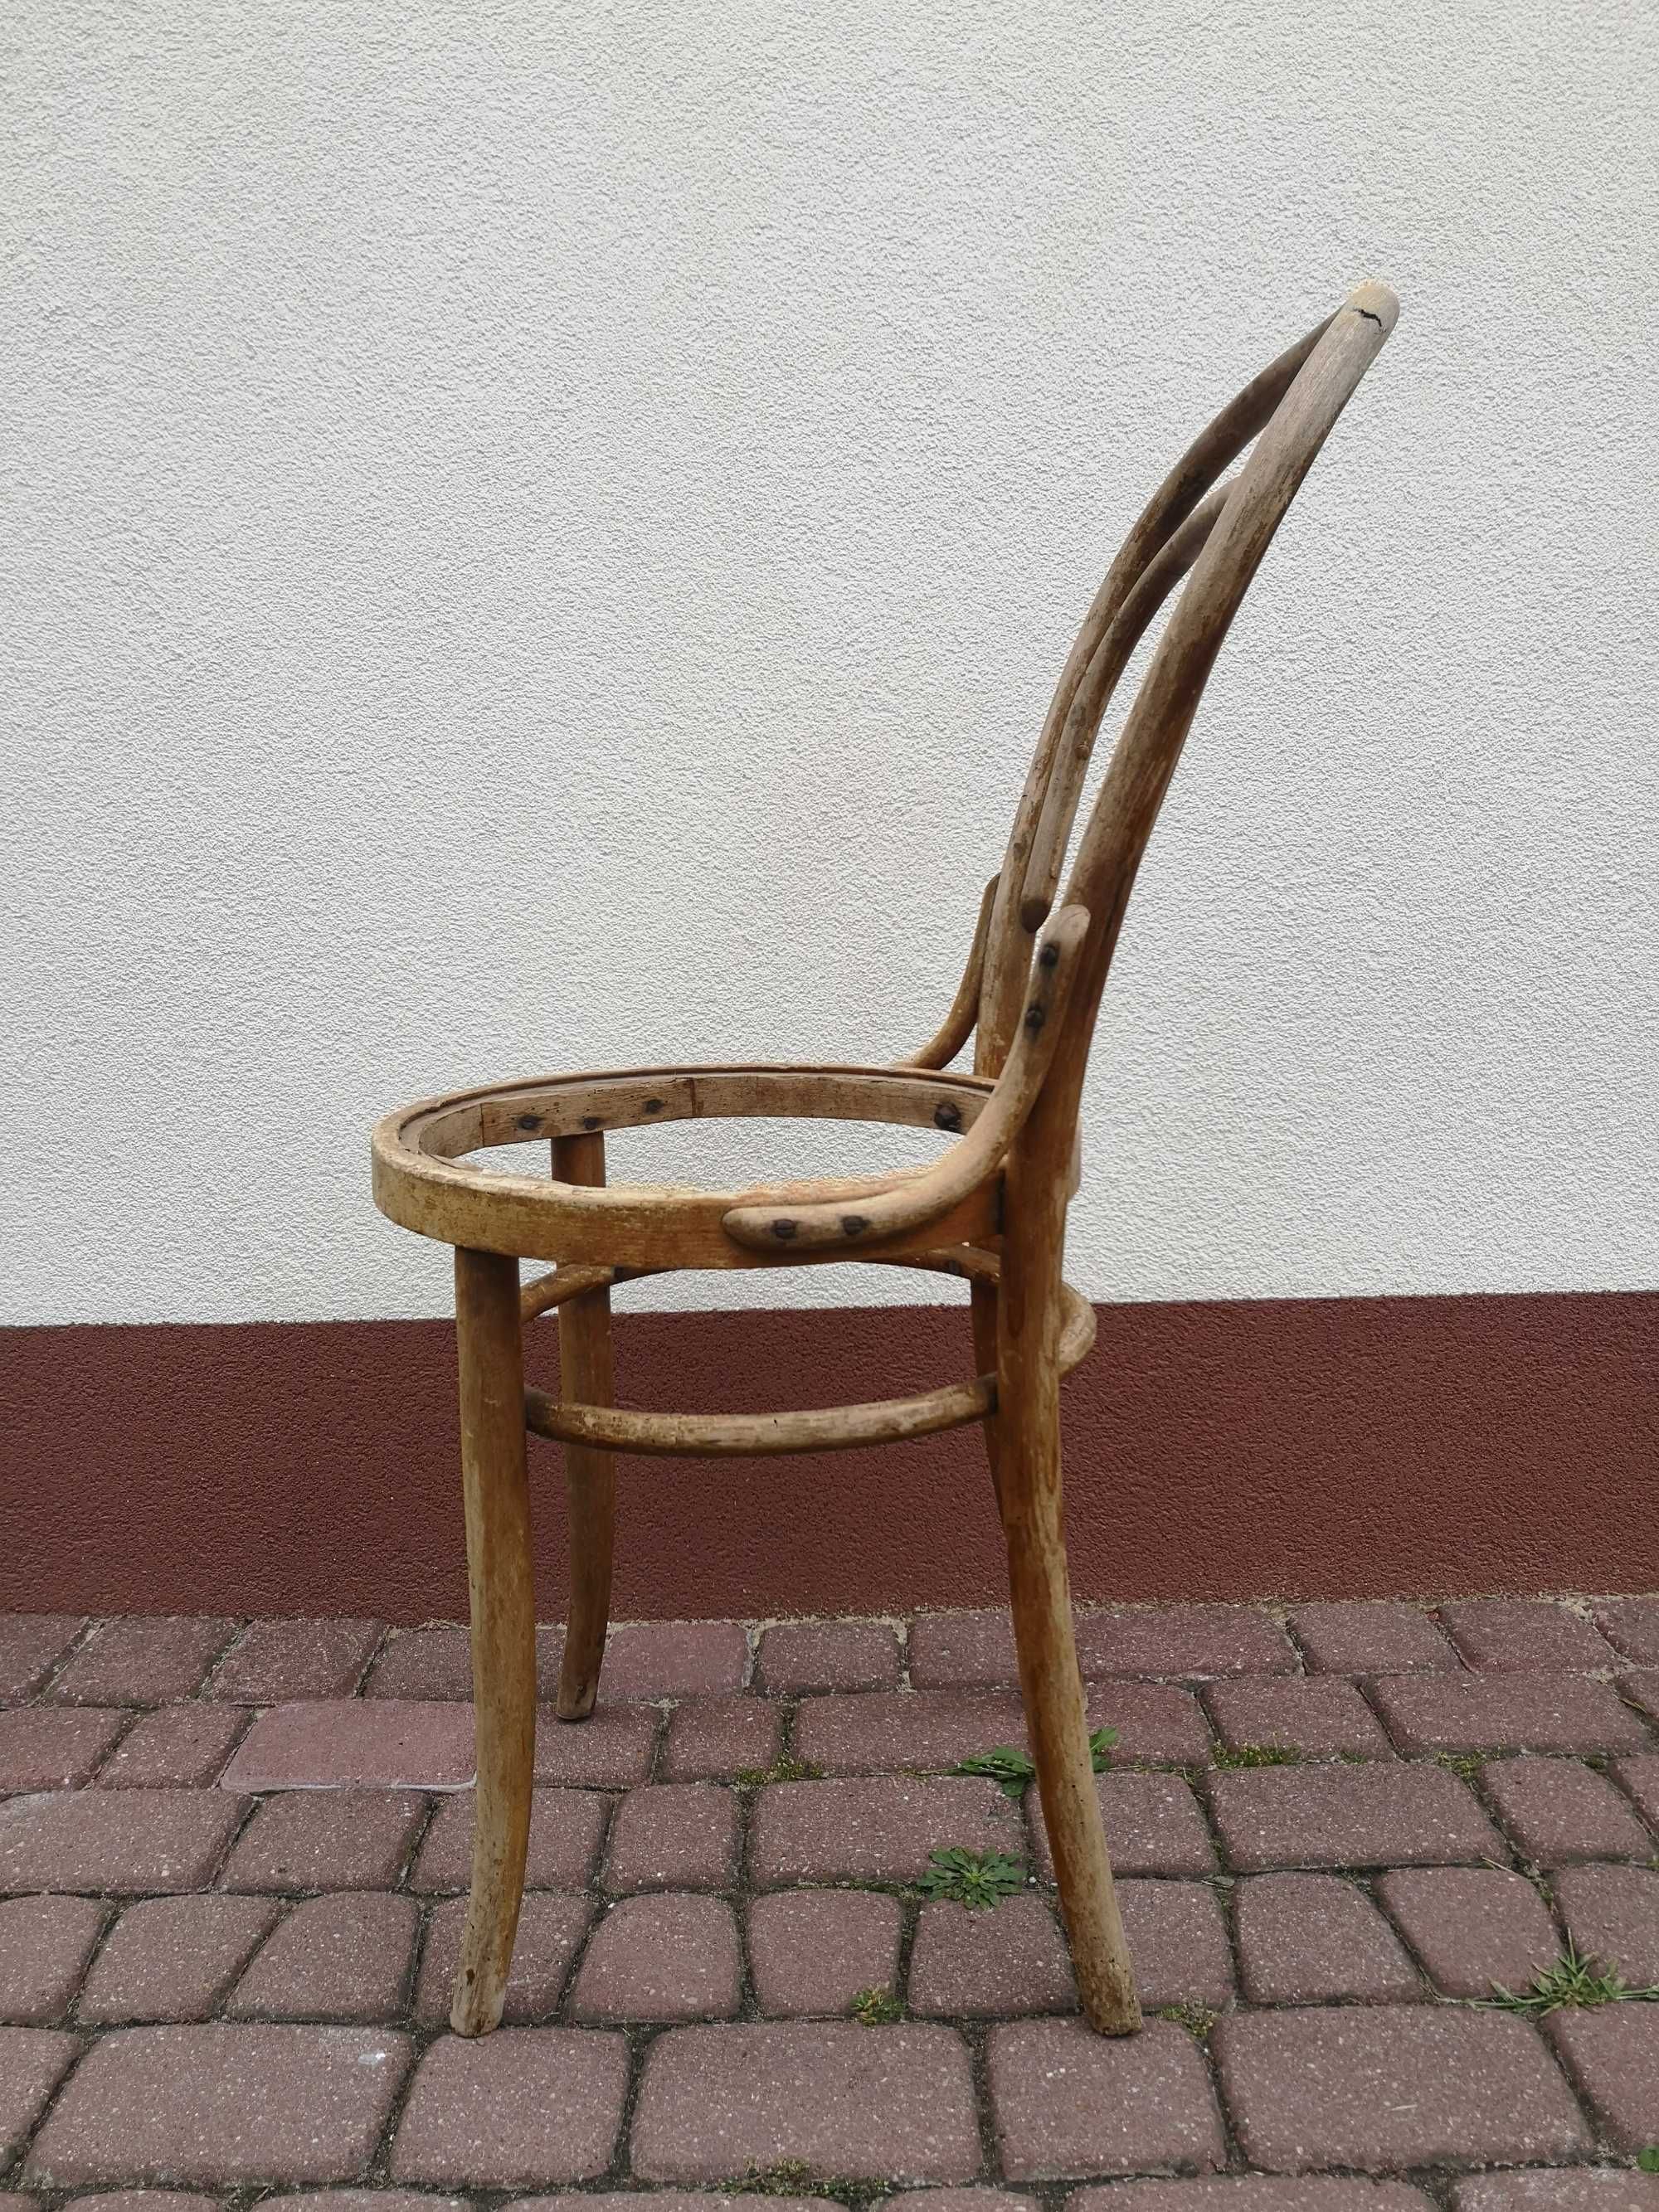 2 drewniane krzesła + gratis drewniania gięta rama krzesła